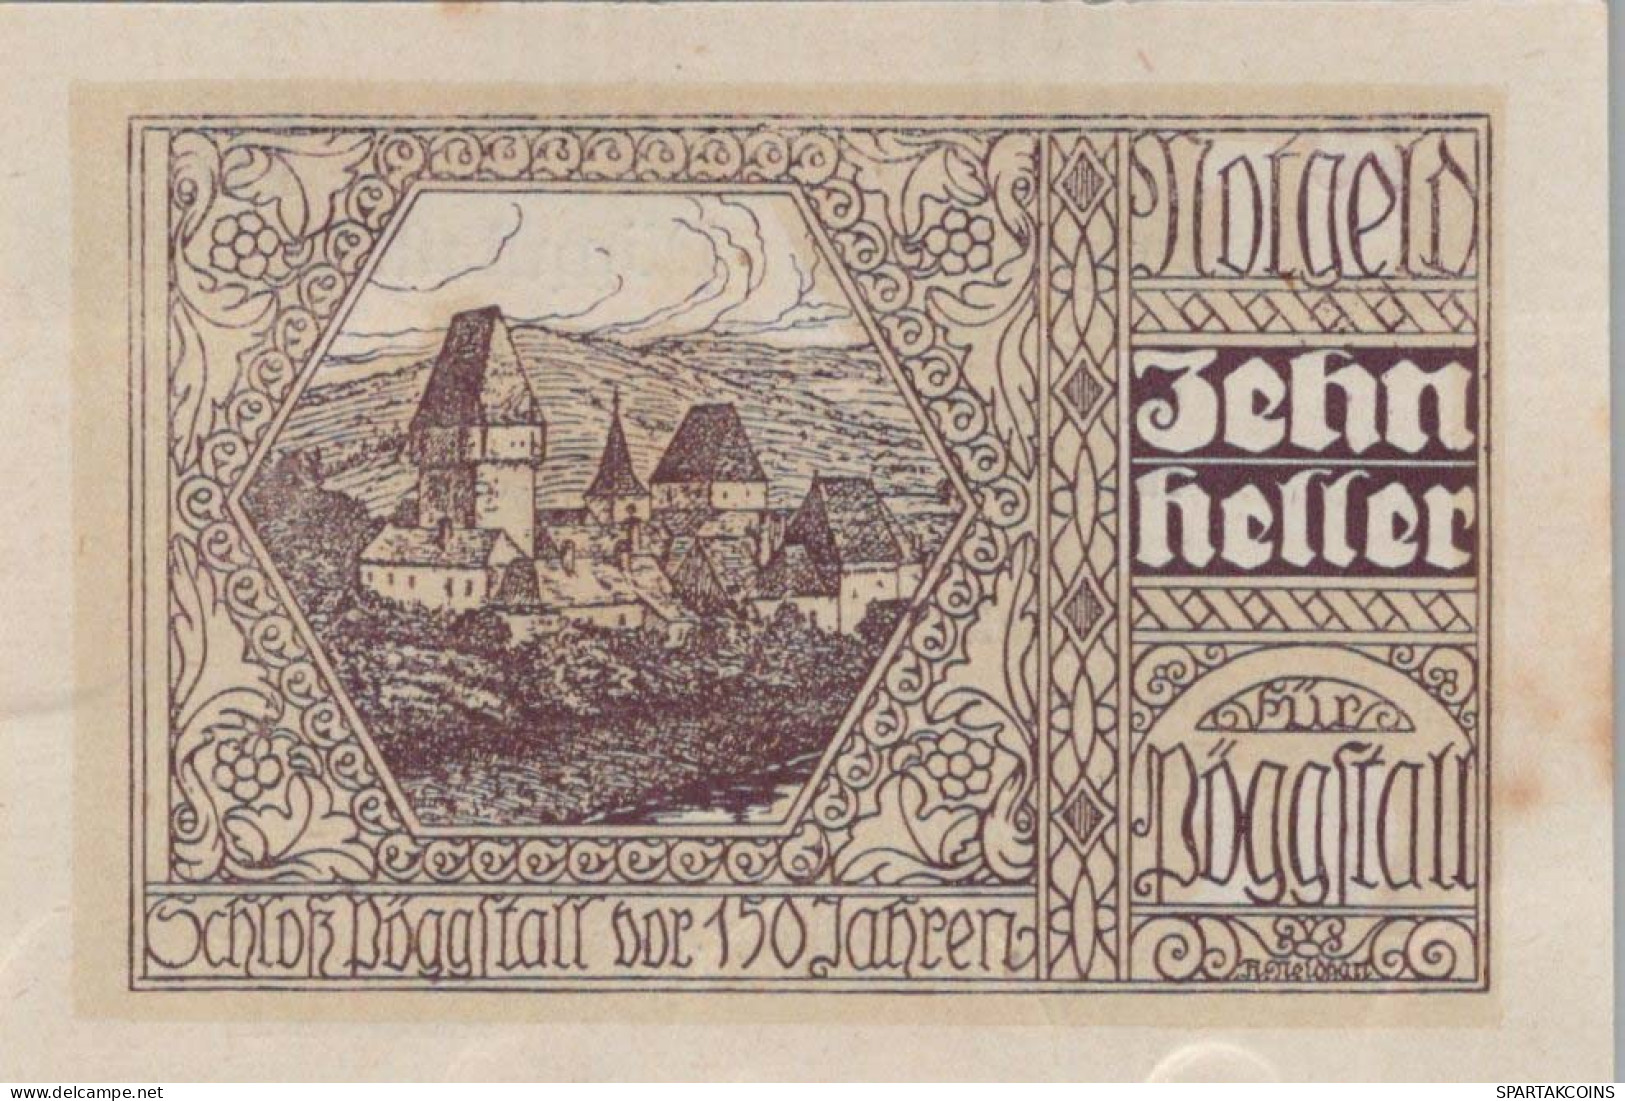 10 HELLER 1920 Stadt PoGGSTALL Niedrigeren Österreich Notgeld Banknote #PE252 - Lokale Ausgaben